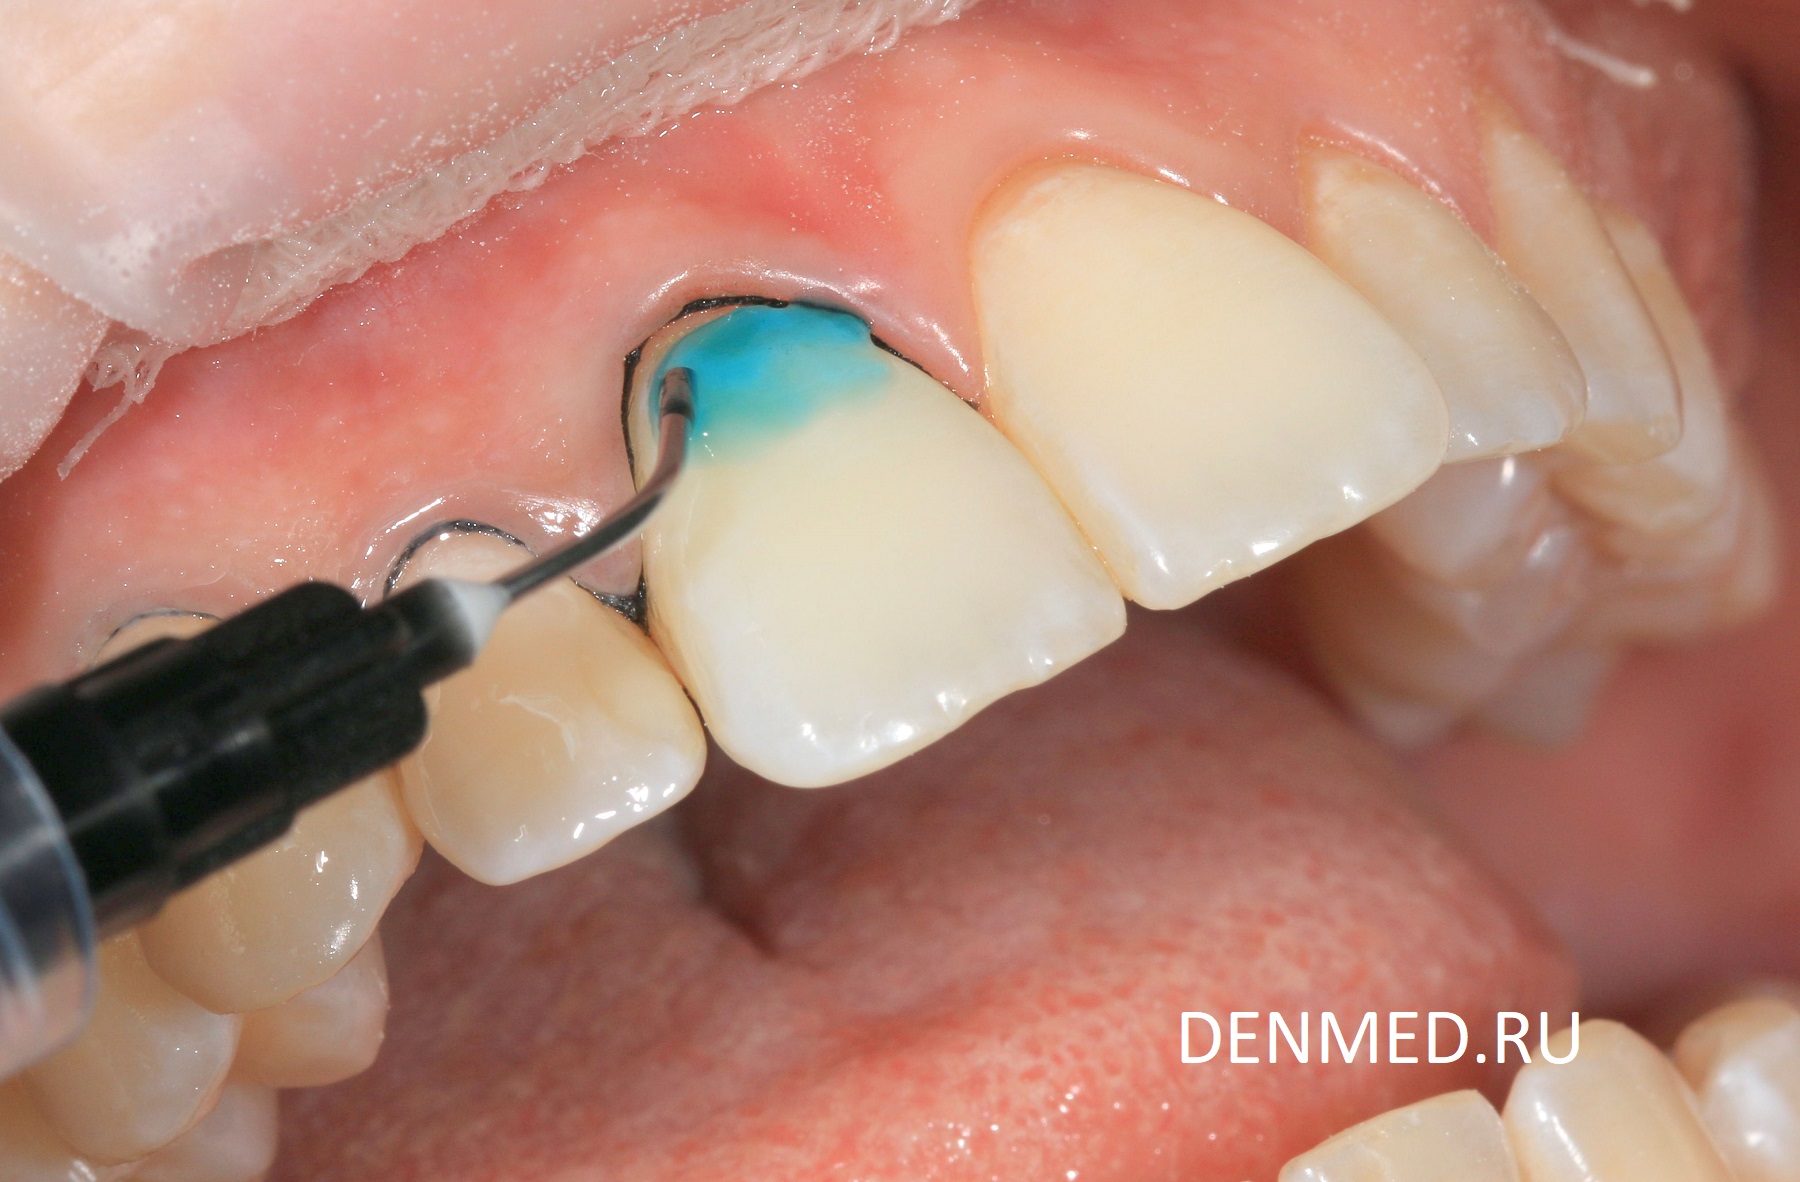 Протравливаем поверхность эмали зубов 36%- ортофосфорной кислотой